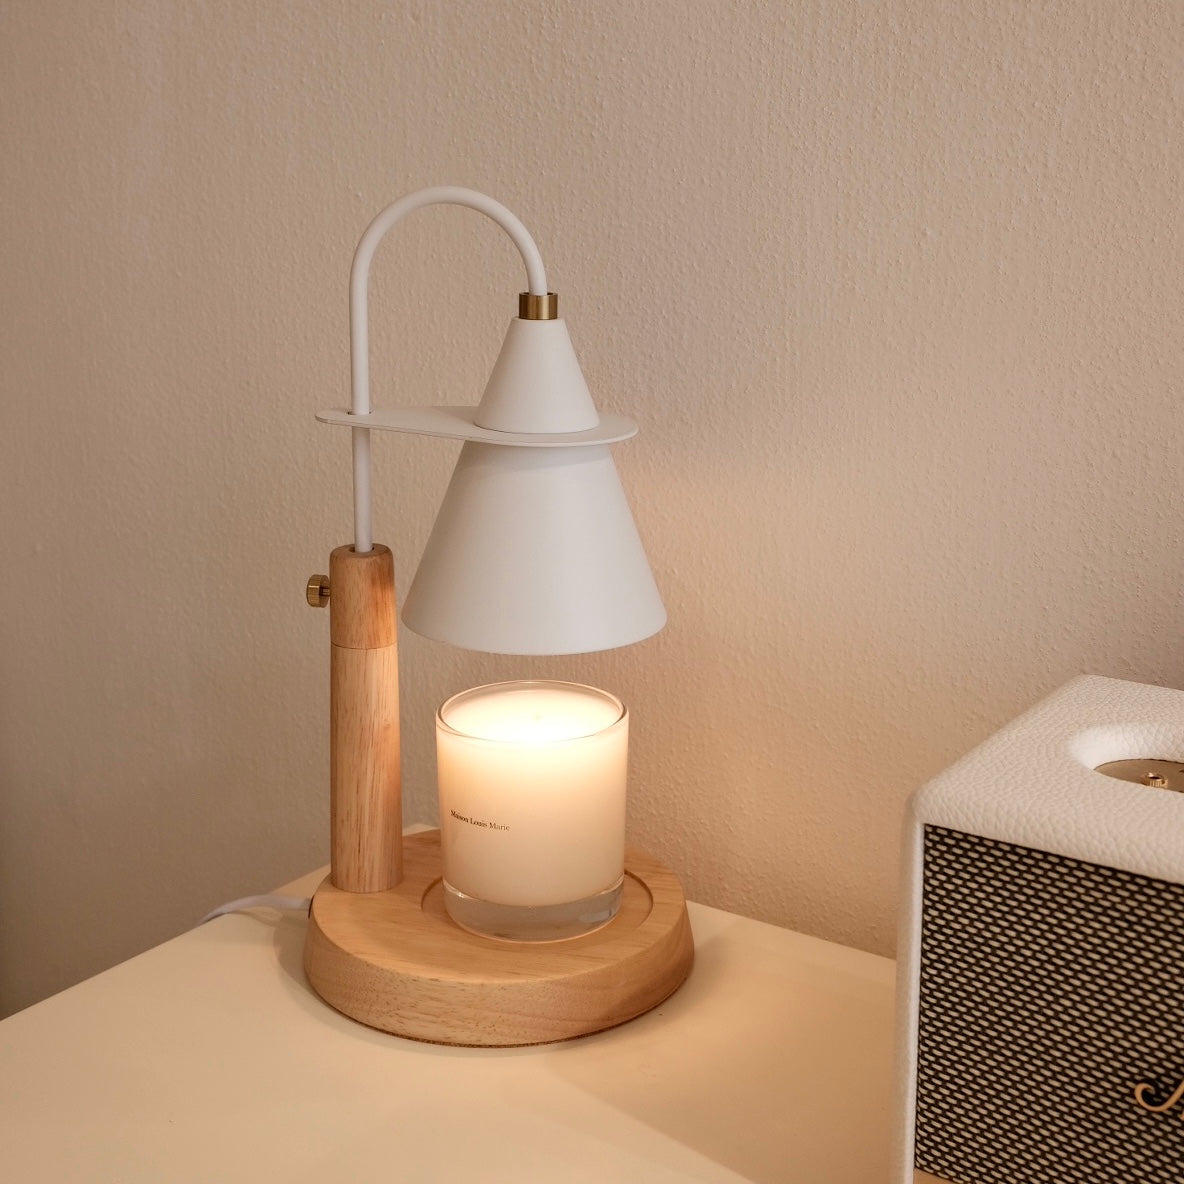 Adjustable Nordic Wooden Candle Warmer 北歐原木融蠟燈（可調升降款）